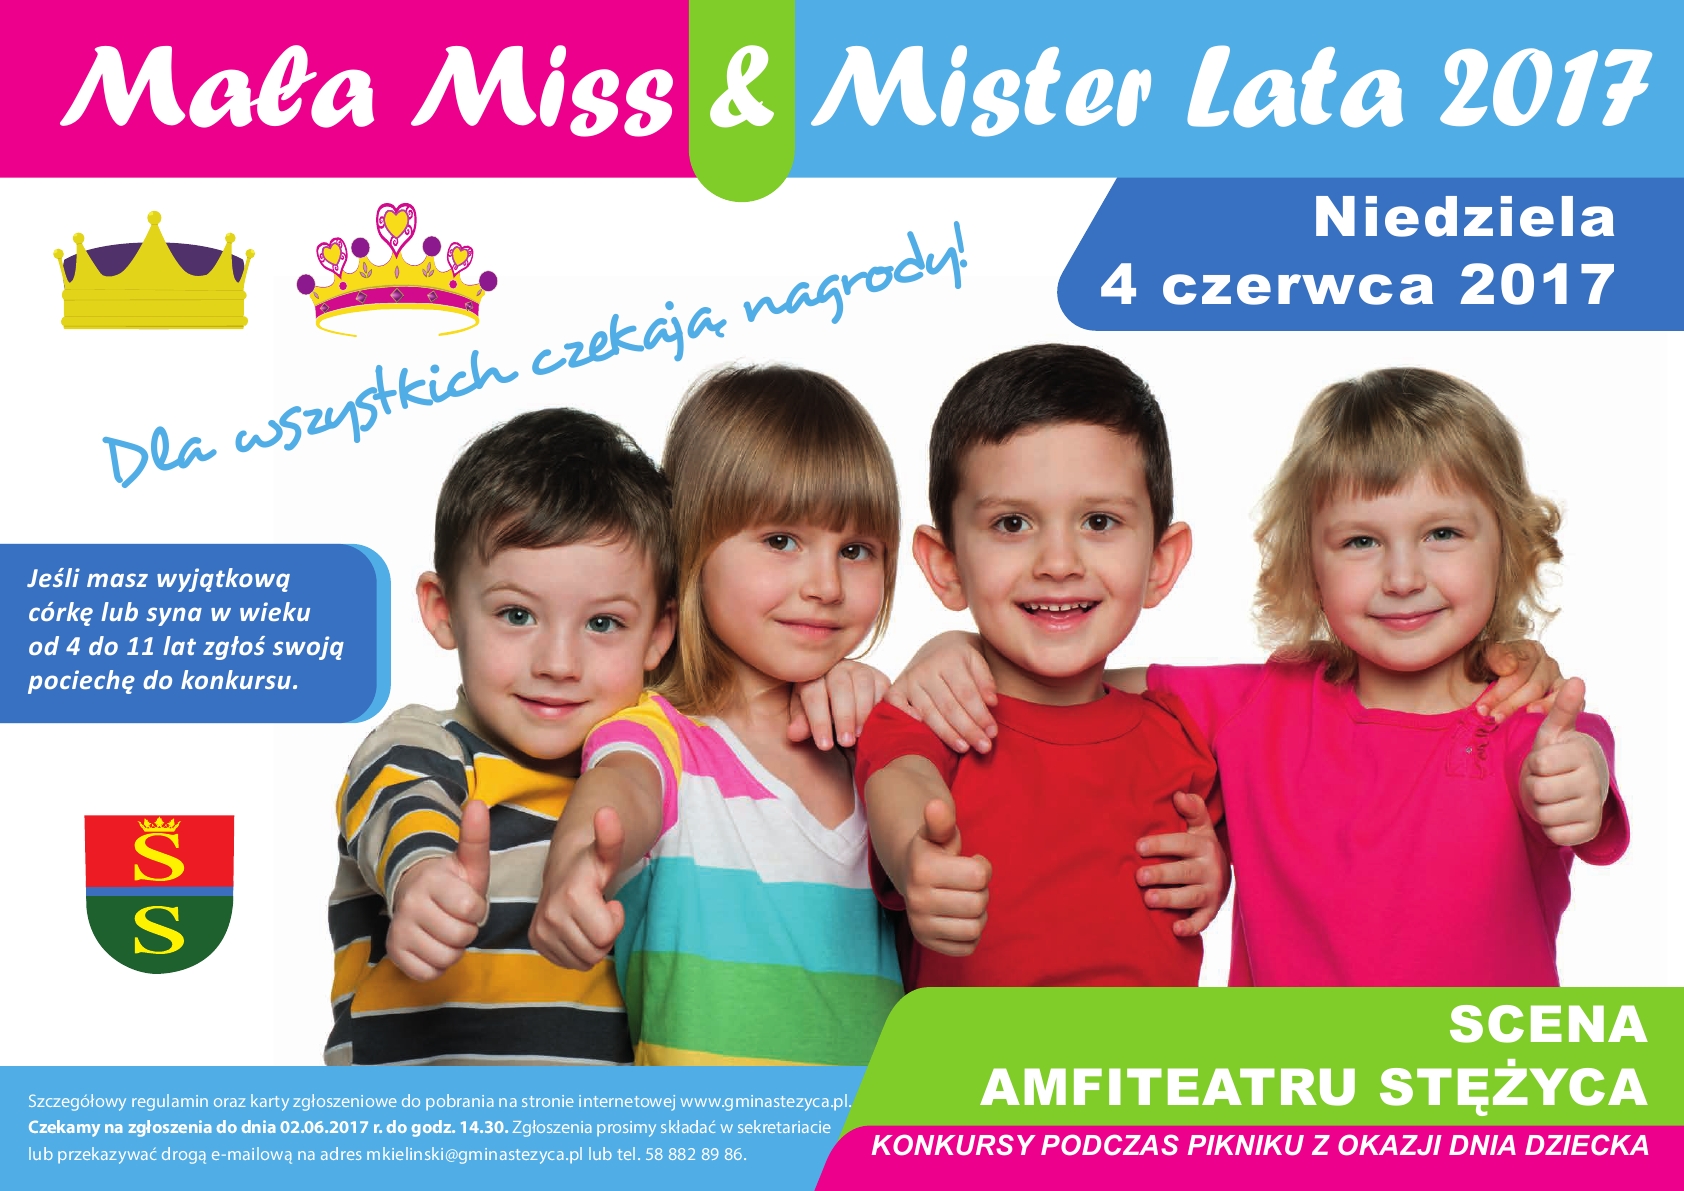 Mała Miss&Mister Lata 2017